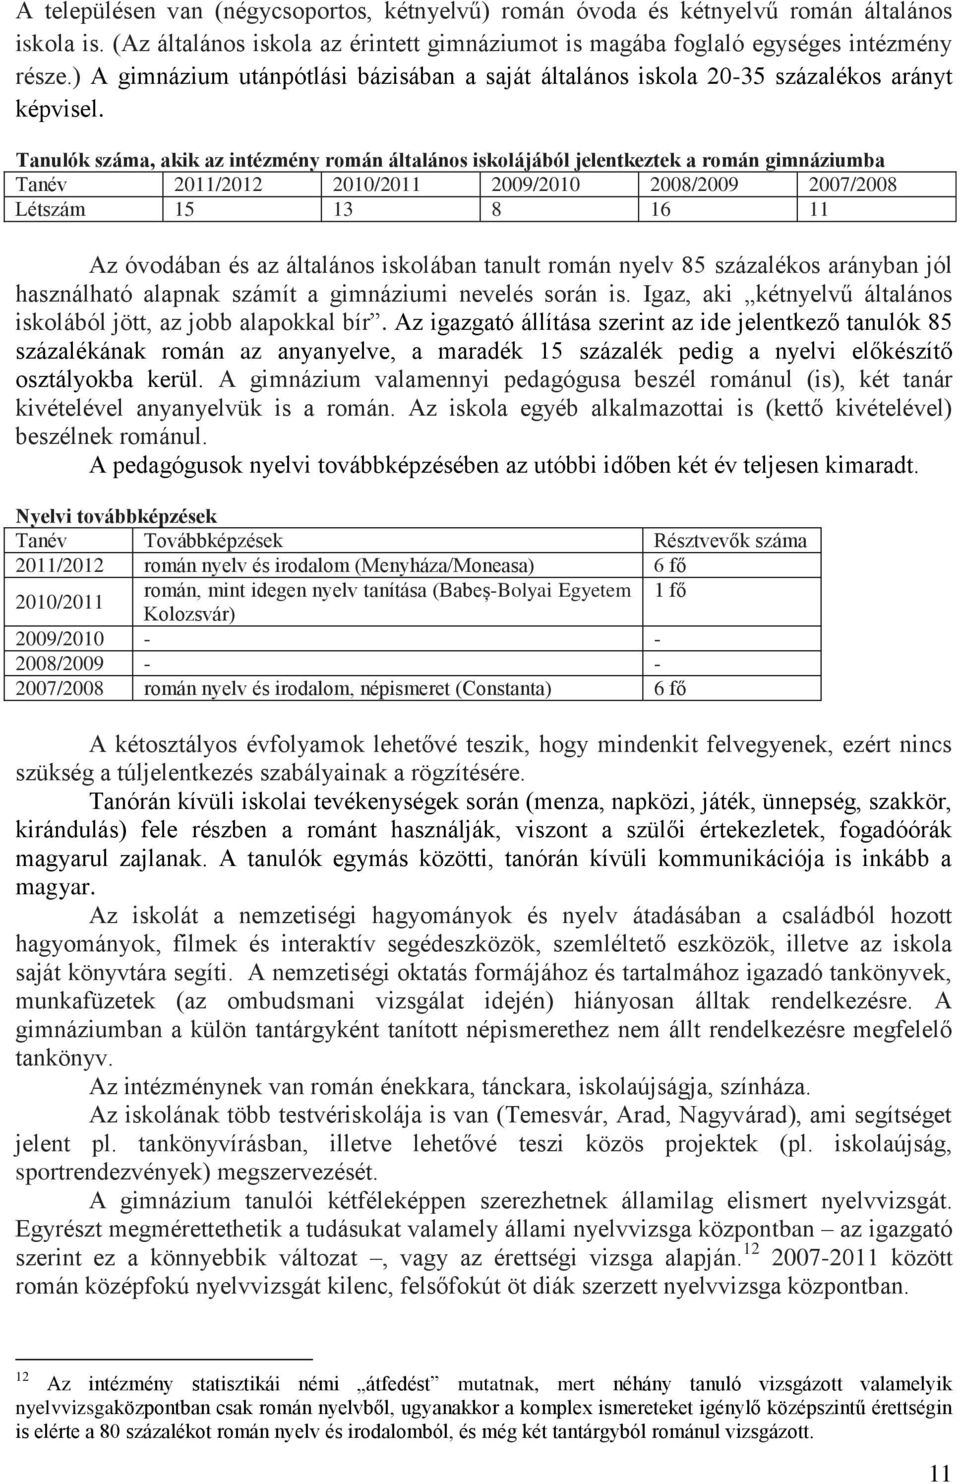 Tanulók száma, akik az intézmény román általános iskolájából jelentkeztek a román gimnáziumba Tanév 2011/2012 2010/2011 2009/2010 2008/2009 2007/2008 Létszám 15 13 8 16 11 Az óvodában és az általános